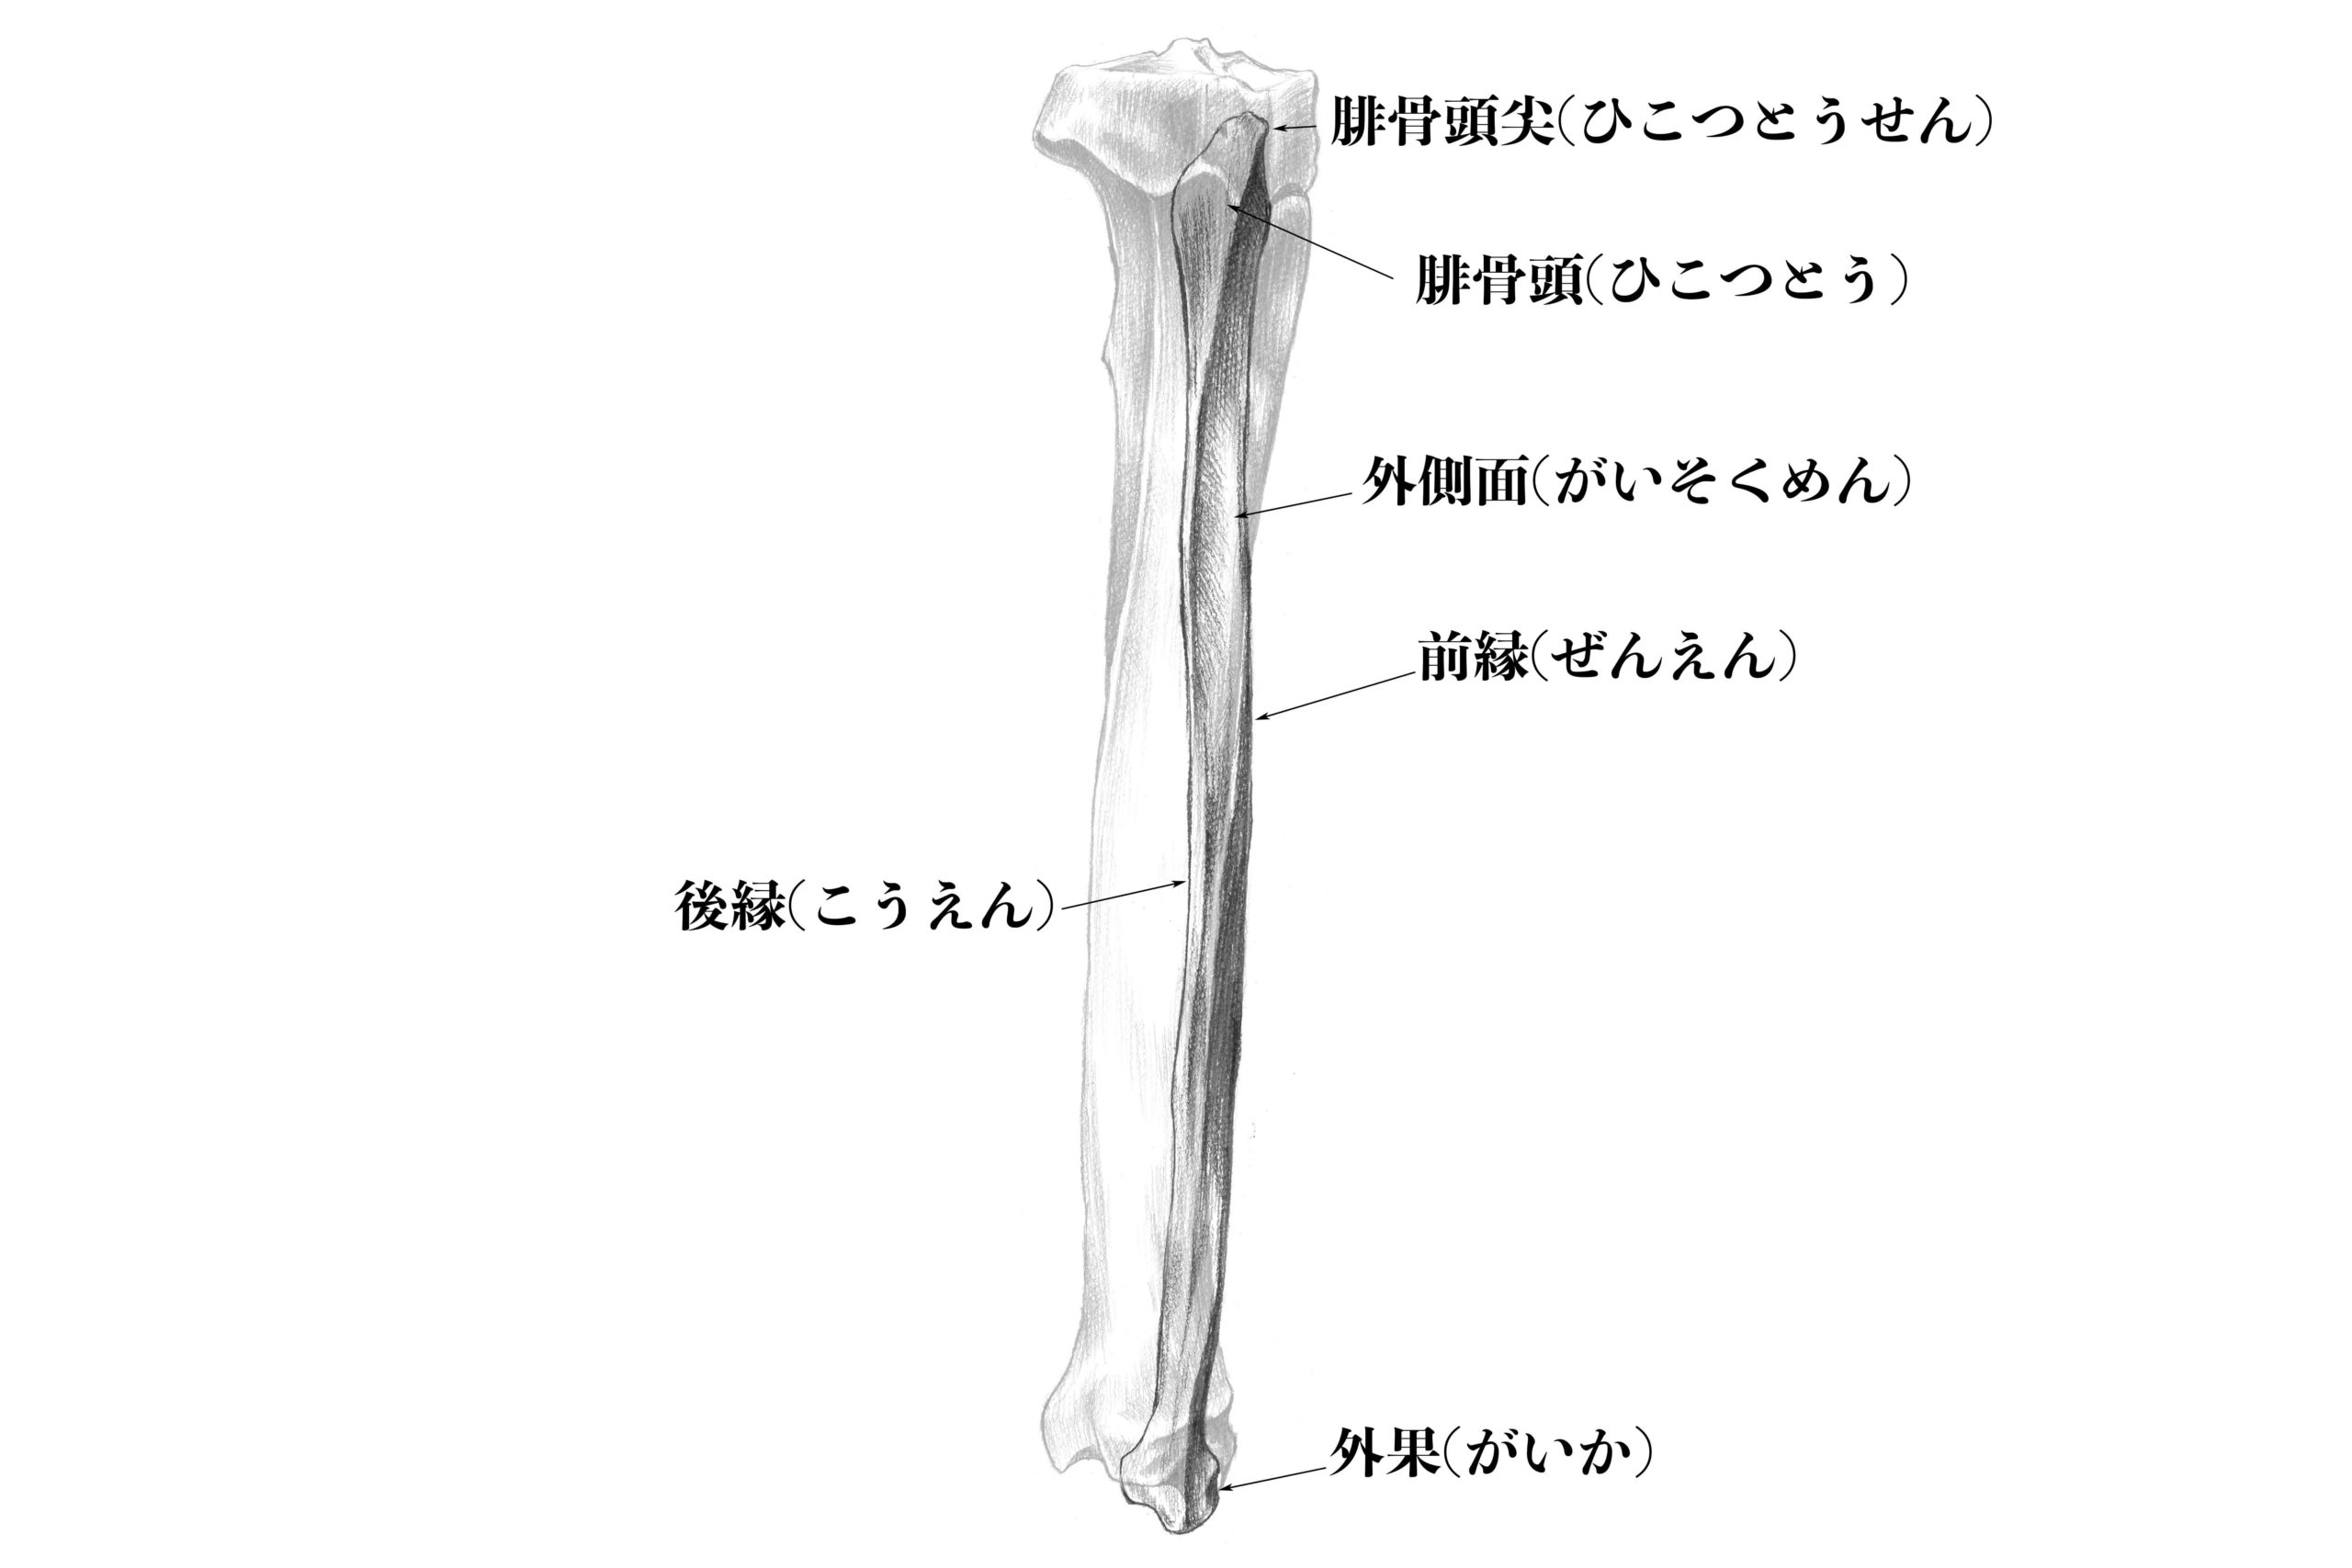 腓骨外側のスケッチ